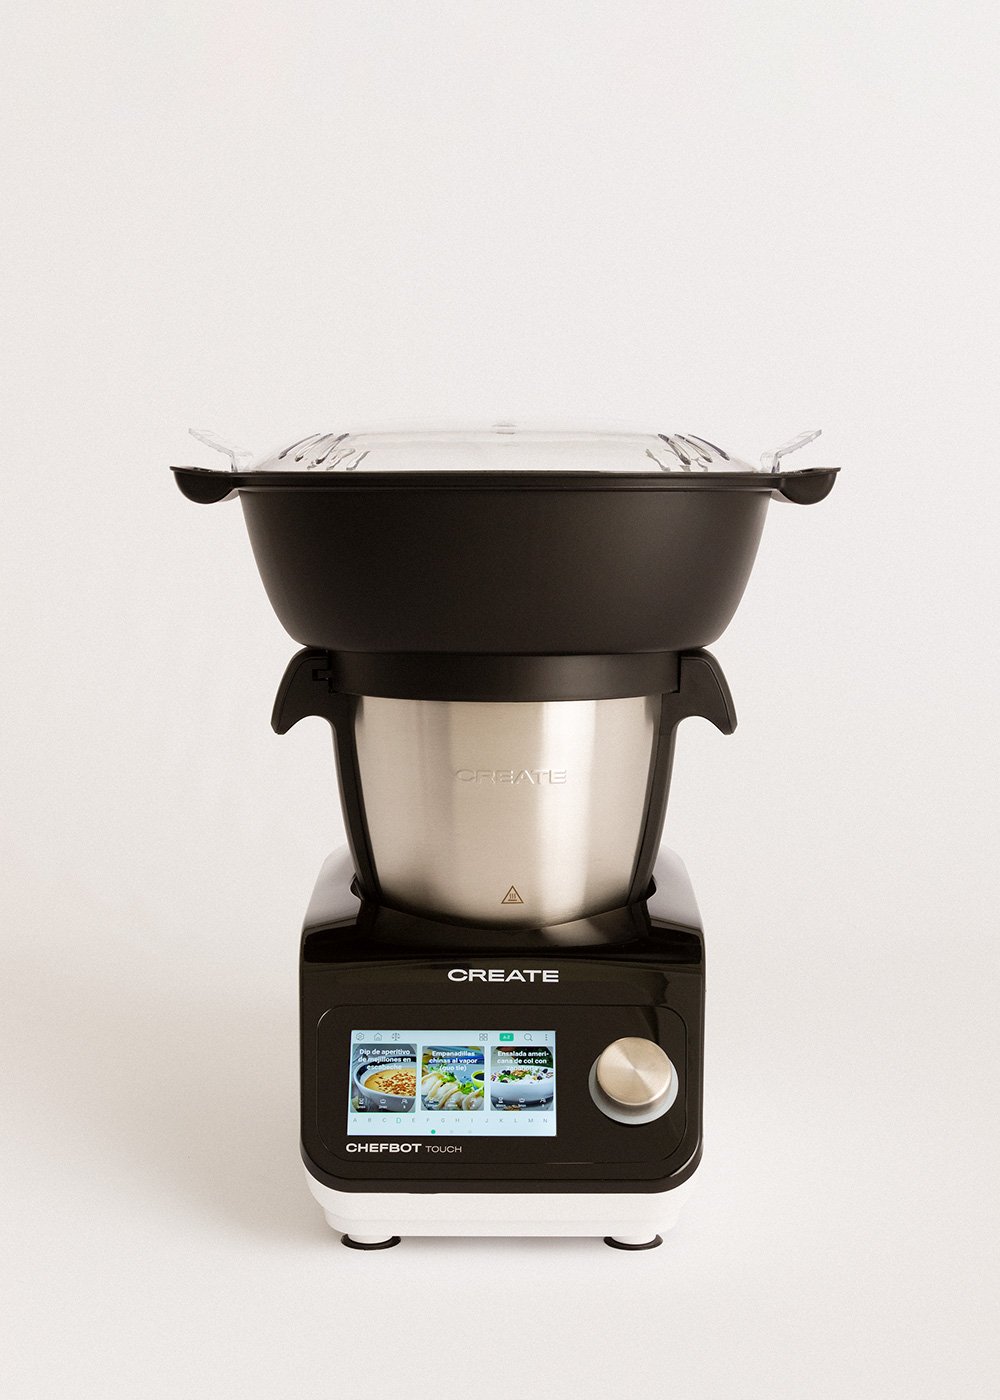 Xiaomi Smart Cooking Robot - Robot de Cocina